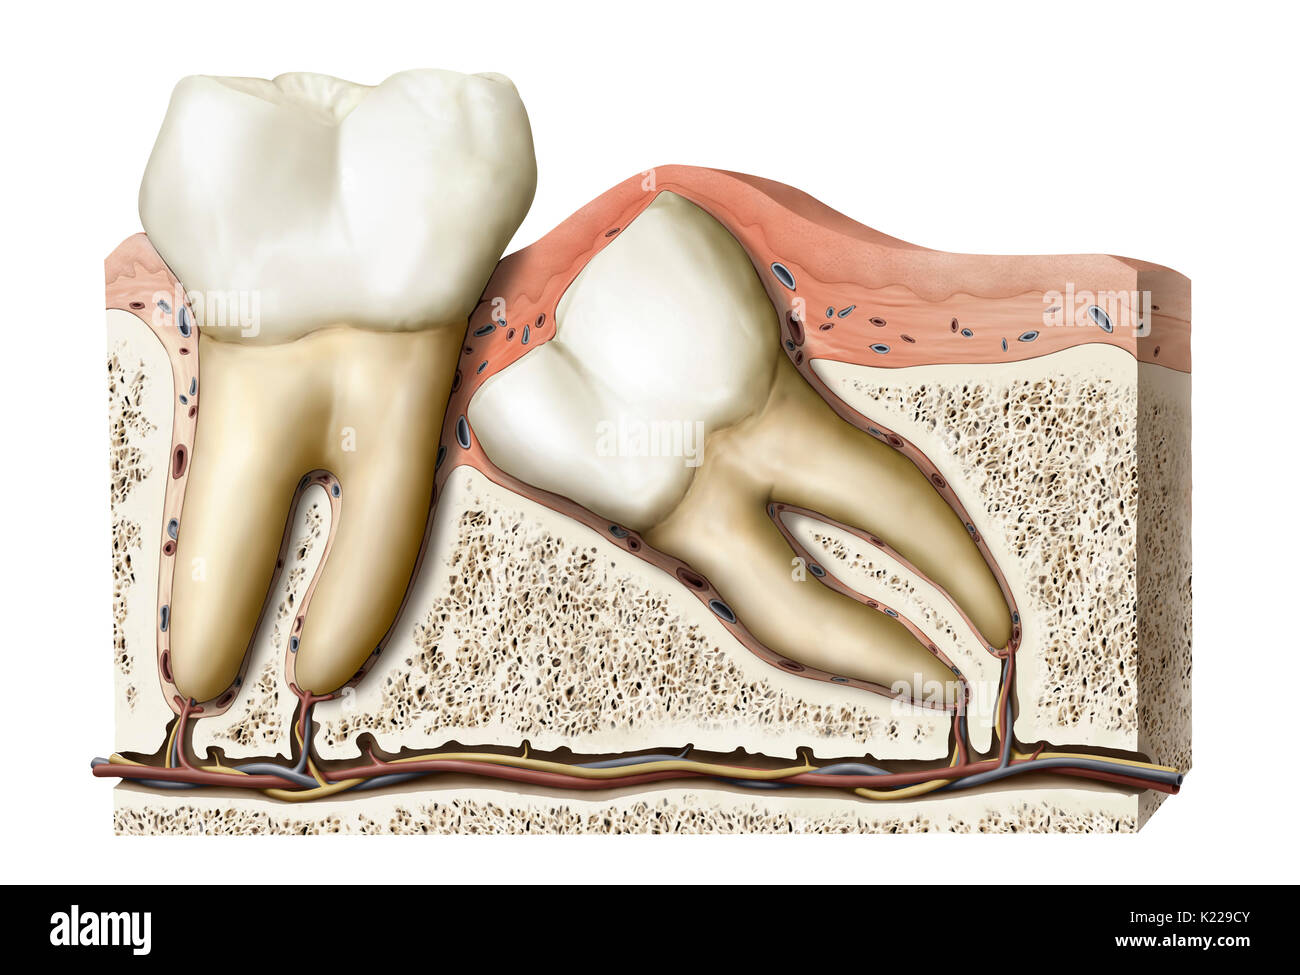 Beim Wachsen, die Weisheitszähne können unter dem Zahnfleisch oder im Knochen bleiben, oder sogar in einer anormalen position Pop. Stockfoto